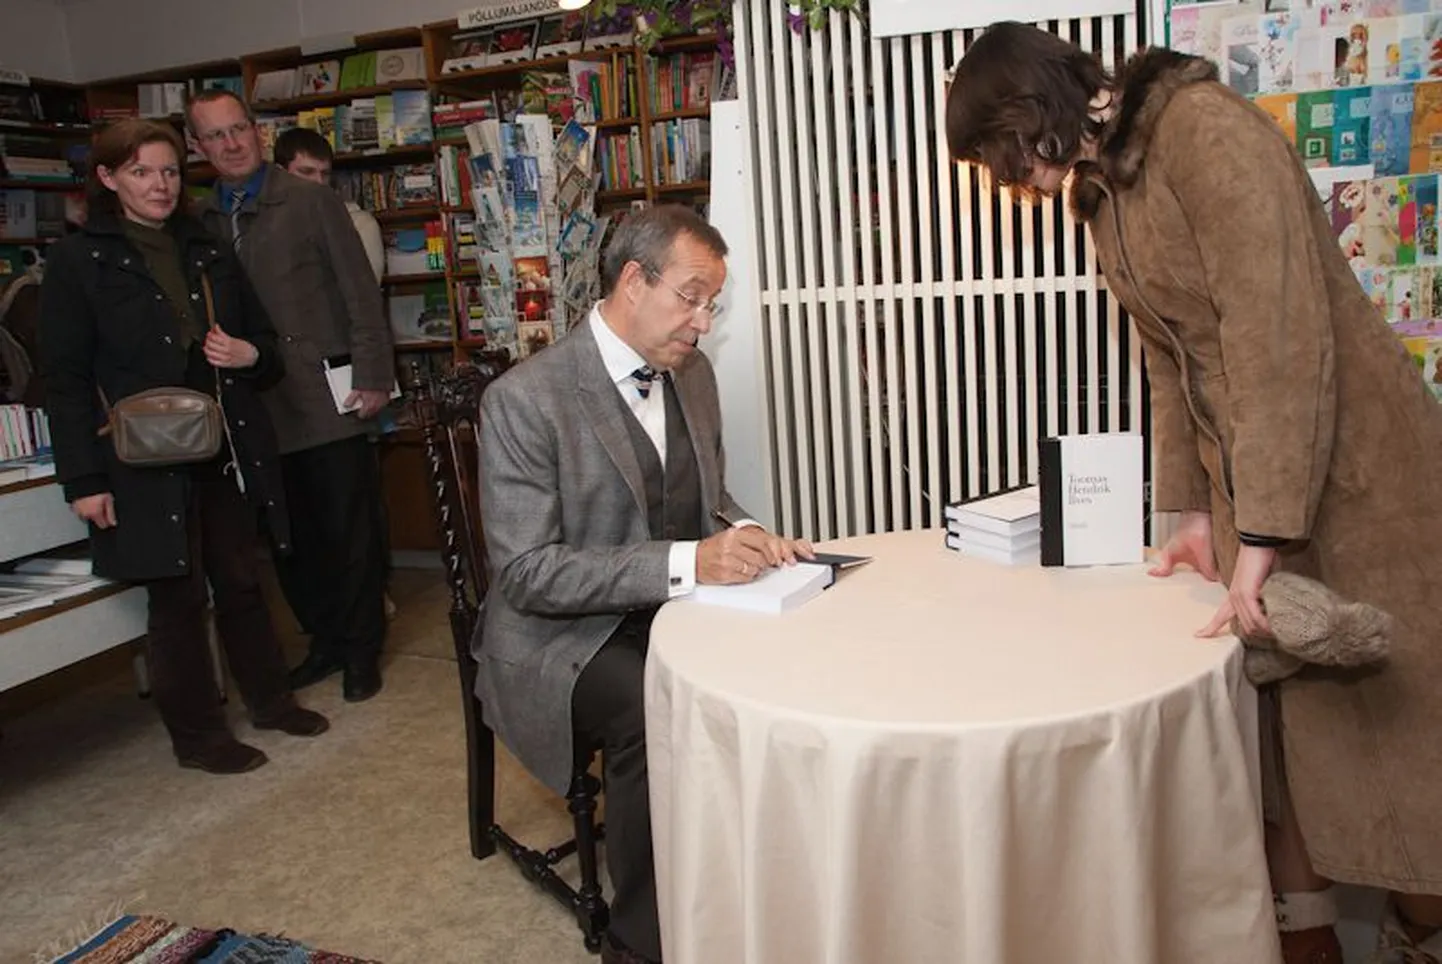 Eesti vabariigi president Toomas Hendrik Ilves esitles oma raamatut "Suurem Eesti" Abja raamatupoes.